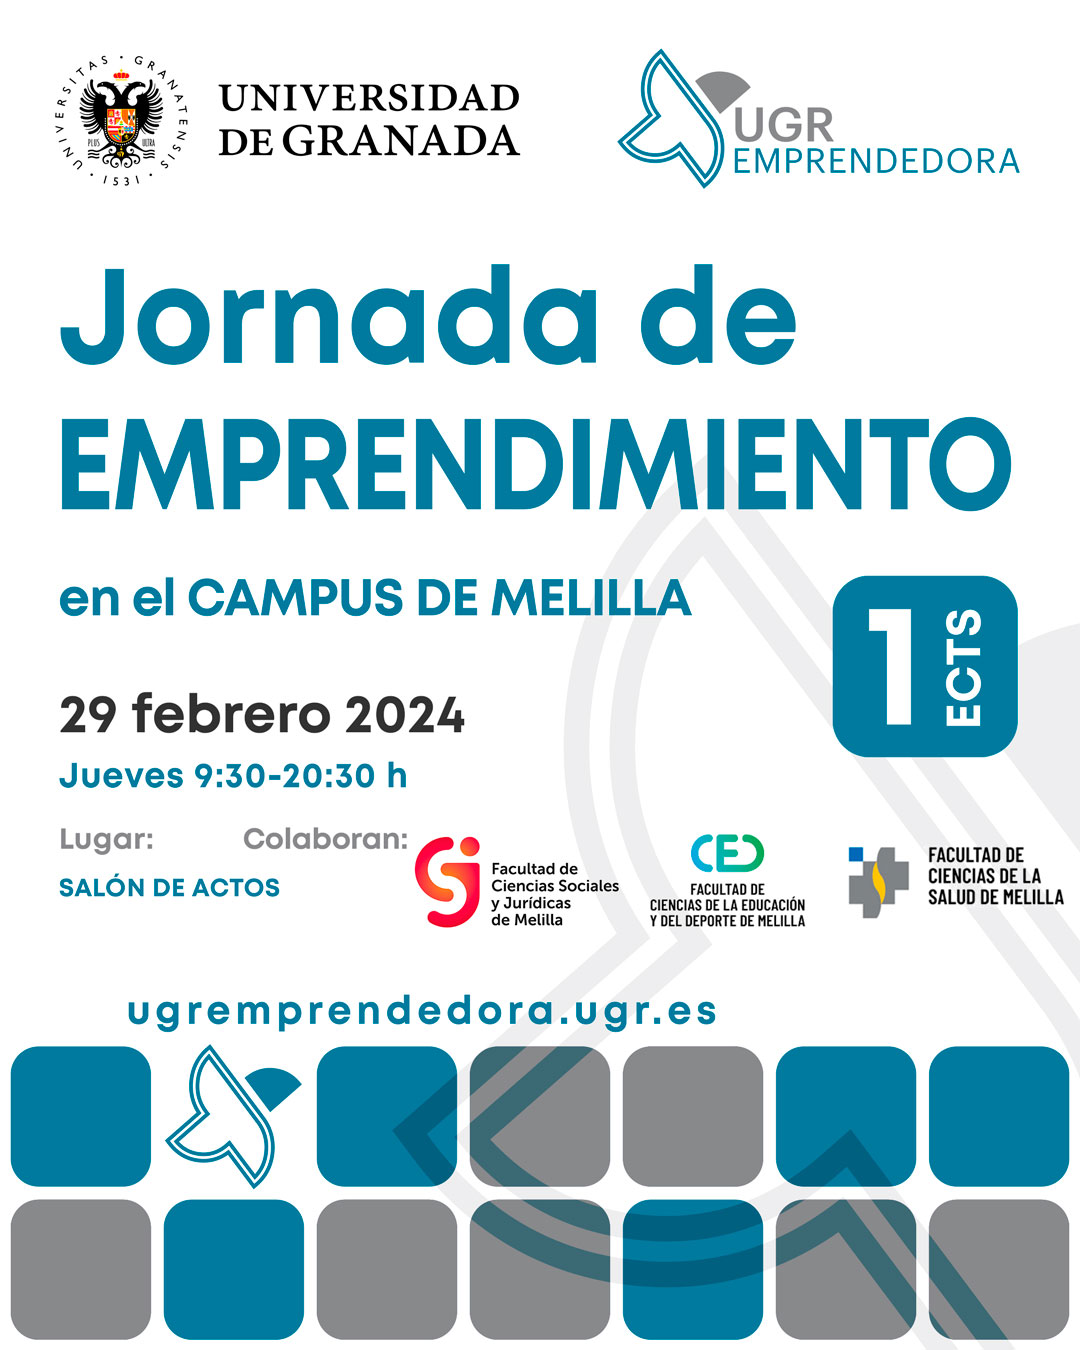 Participa en las próximas Jornadas de Emprendimiento de UGR Emprendedora en el Campus de Melilla